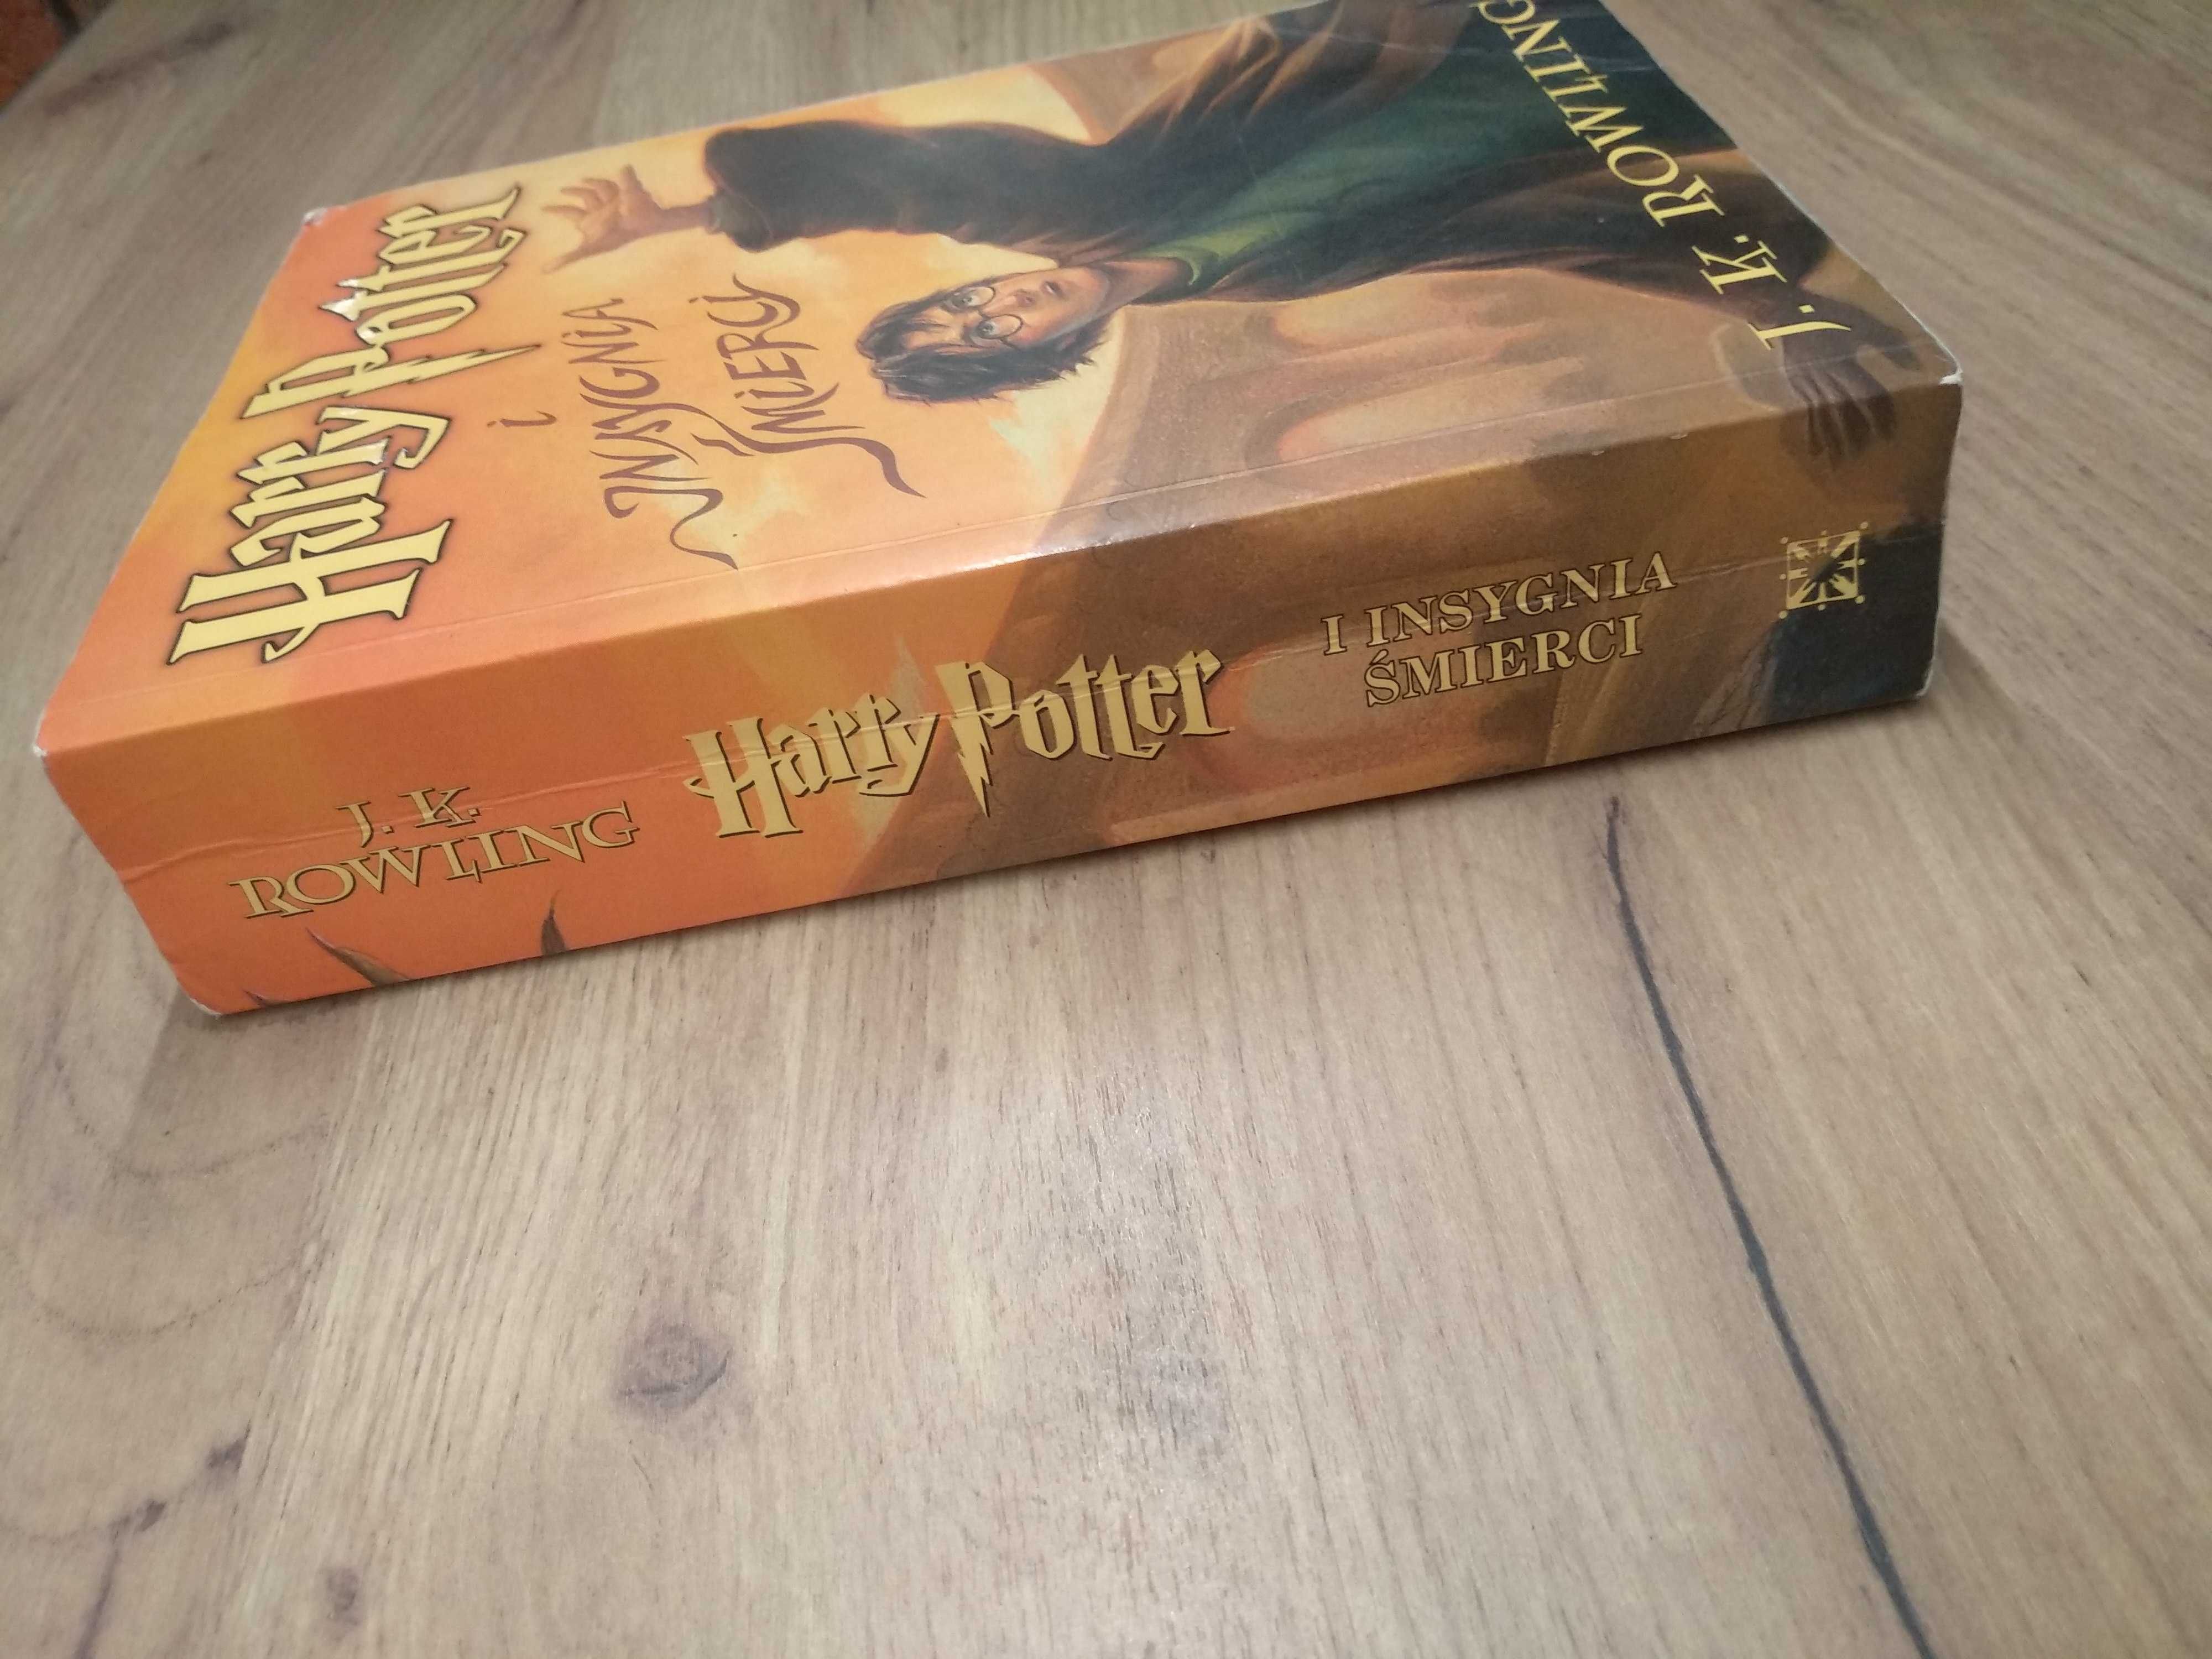 Harry Potter i Insygnia Śmierci stare wydanie pierwsze